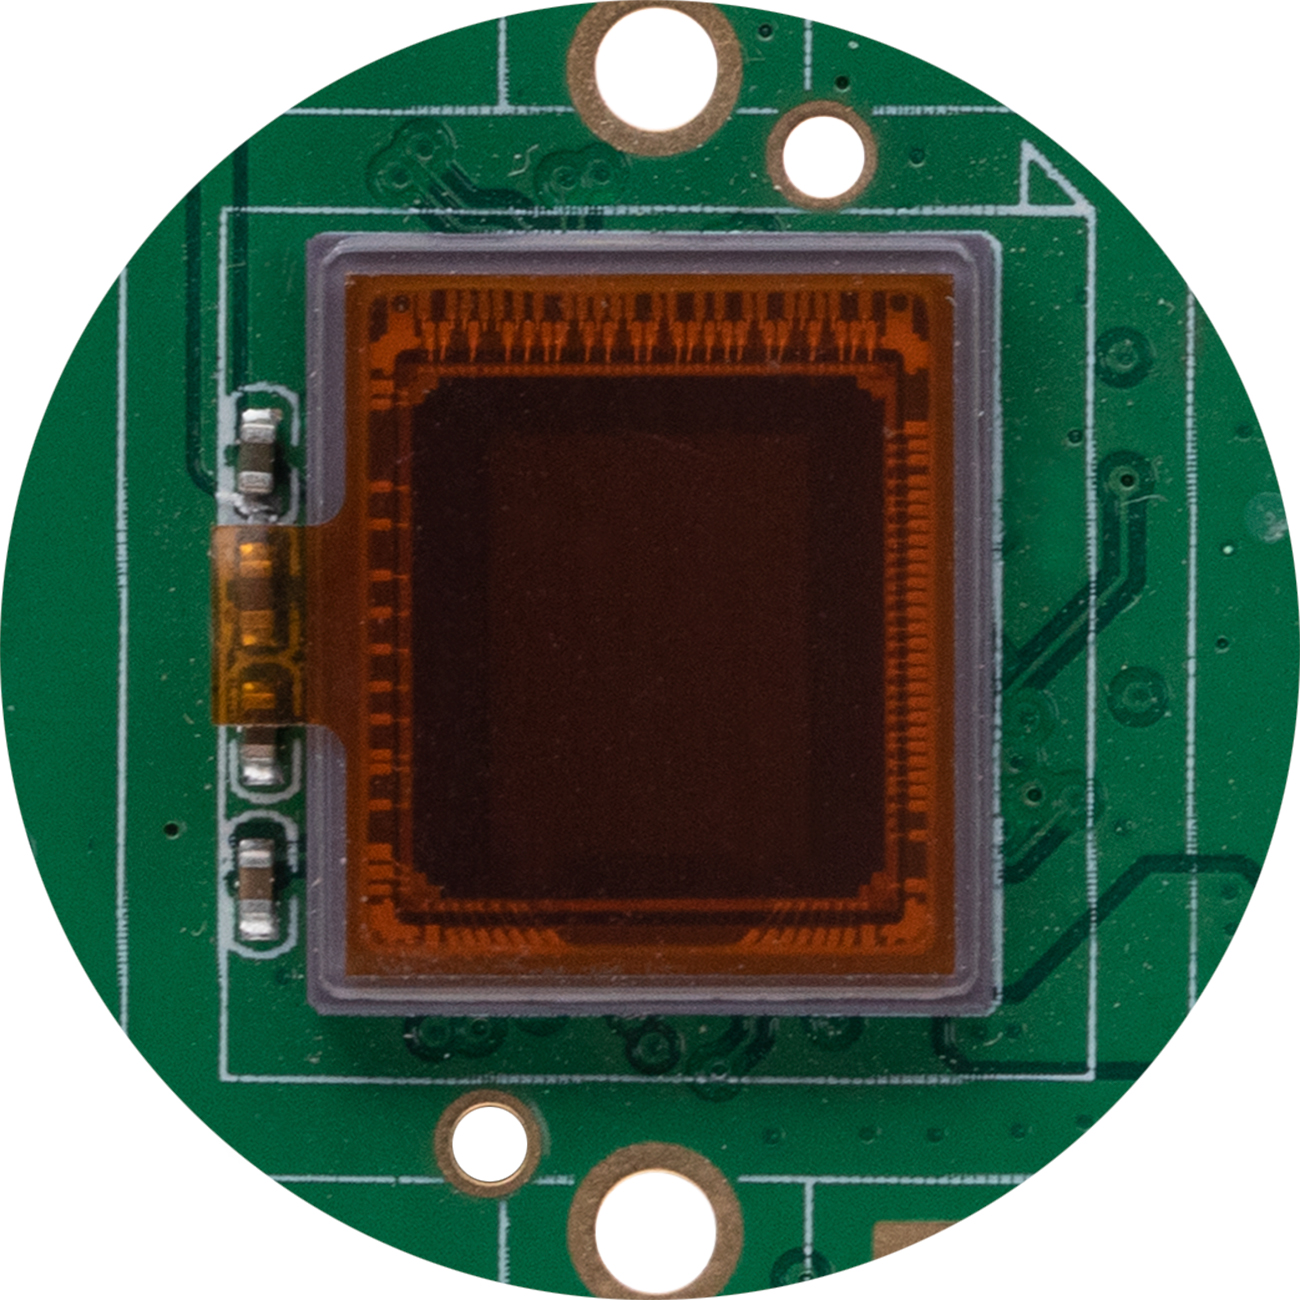 松下Panasonic CMOS， MN34120PAJ深圳现货，1600万像素运动相机CMOS,16MP相机cmos，16mp工业相机sensor，松下安防CMOS，监控摄像机1080p60帧图像传感器，1080p@60fps CMOS，1/2.33-inch 4:3 sensor